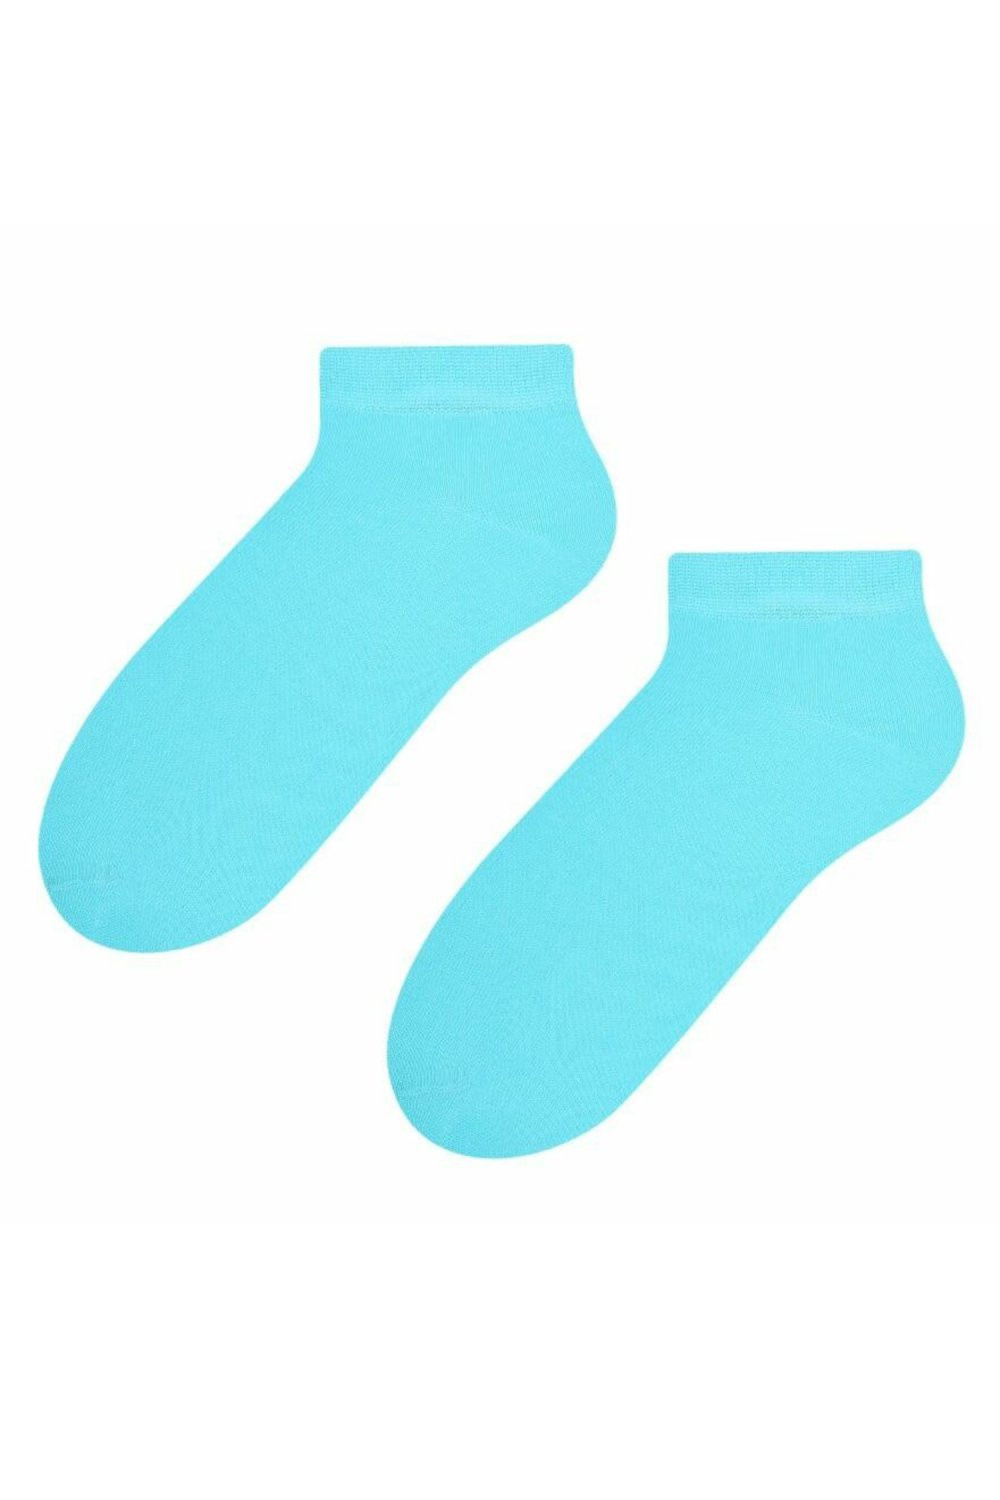 Dámské ponožky 052 turquoise - Steven tyrkysová 35/37